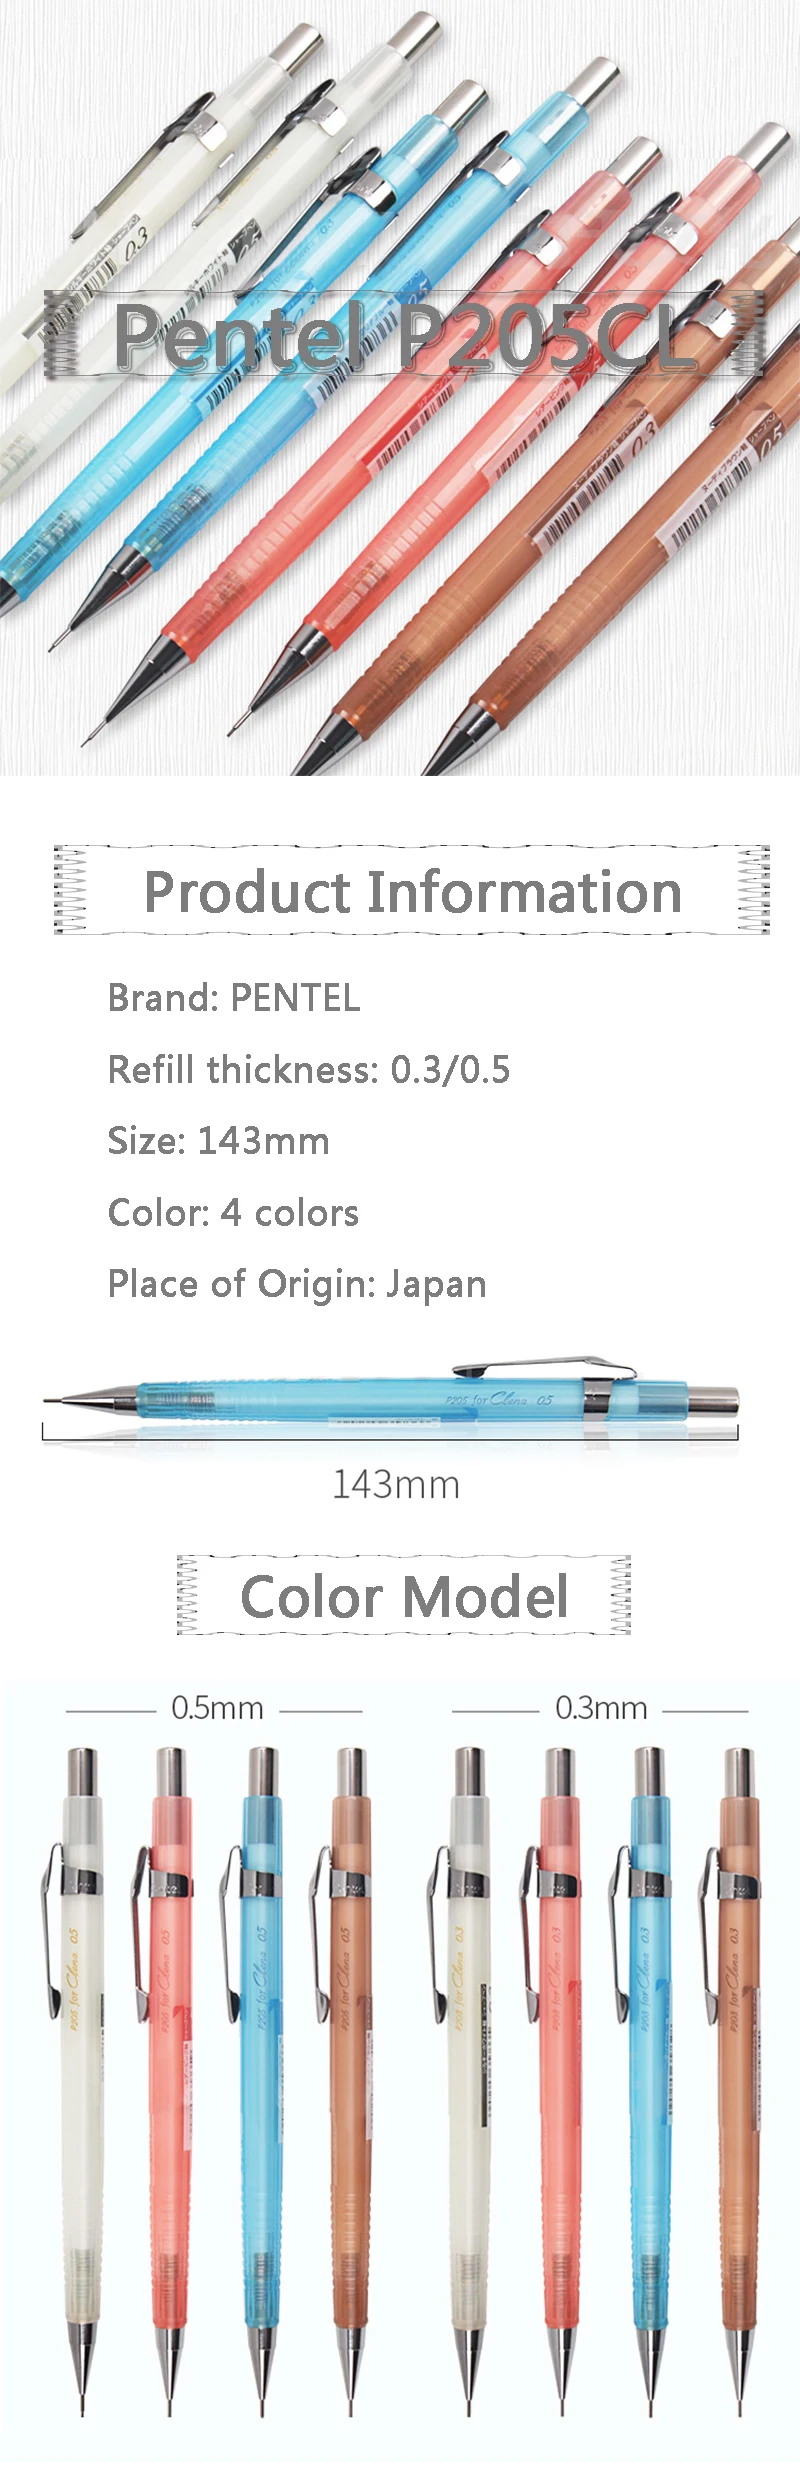 1cps Ограниченная серия Япония Pentel P205CL прозрачный стержень автоматический карандаш 0,3/0,5 мм карандаш для рисования